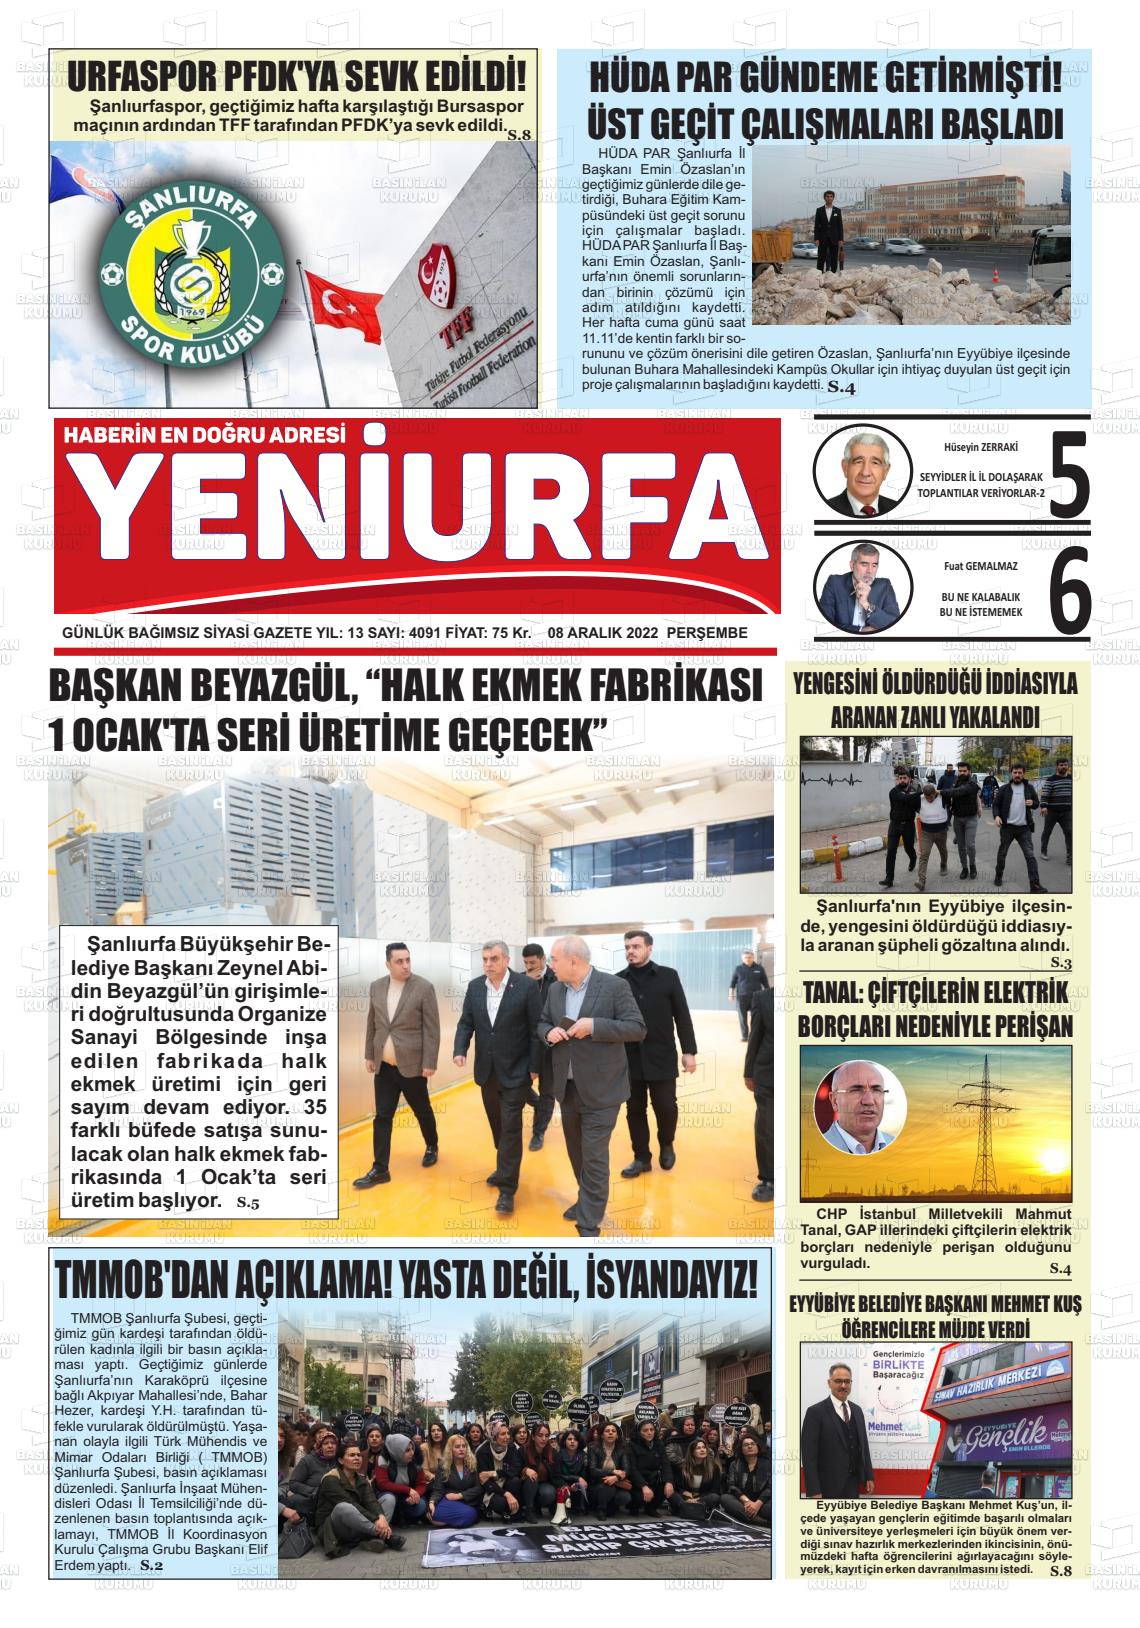 08 Aralık 2022 Yeni Urfa Gazete Manşeti